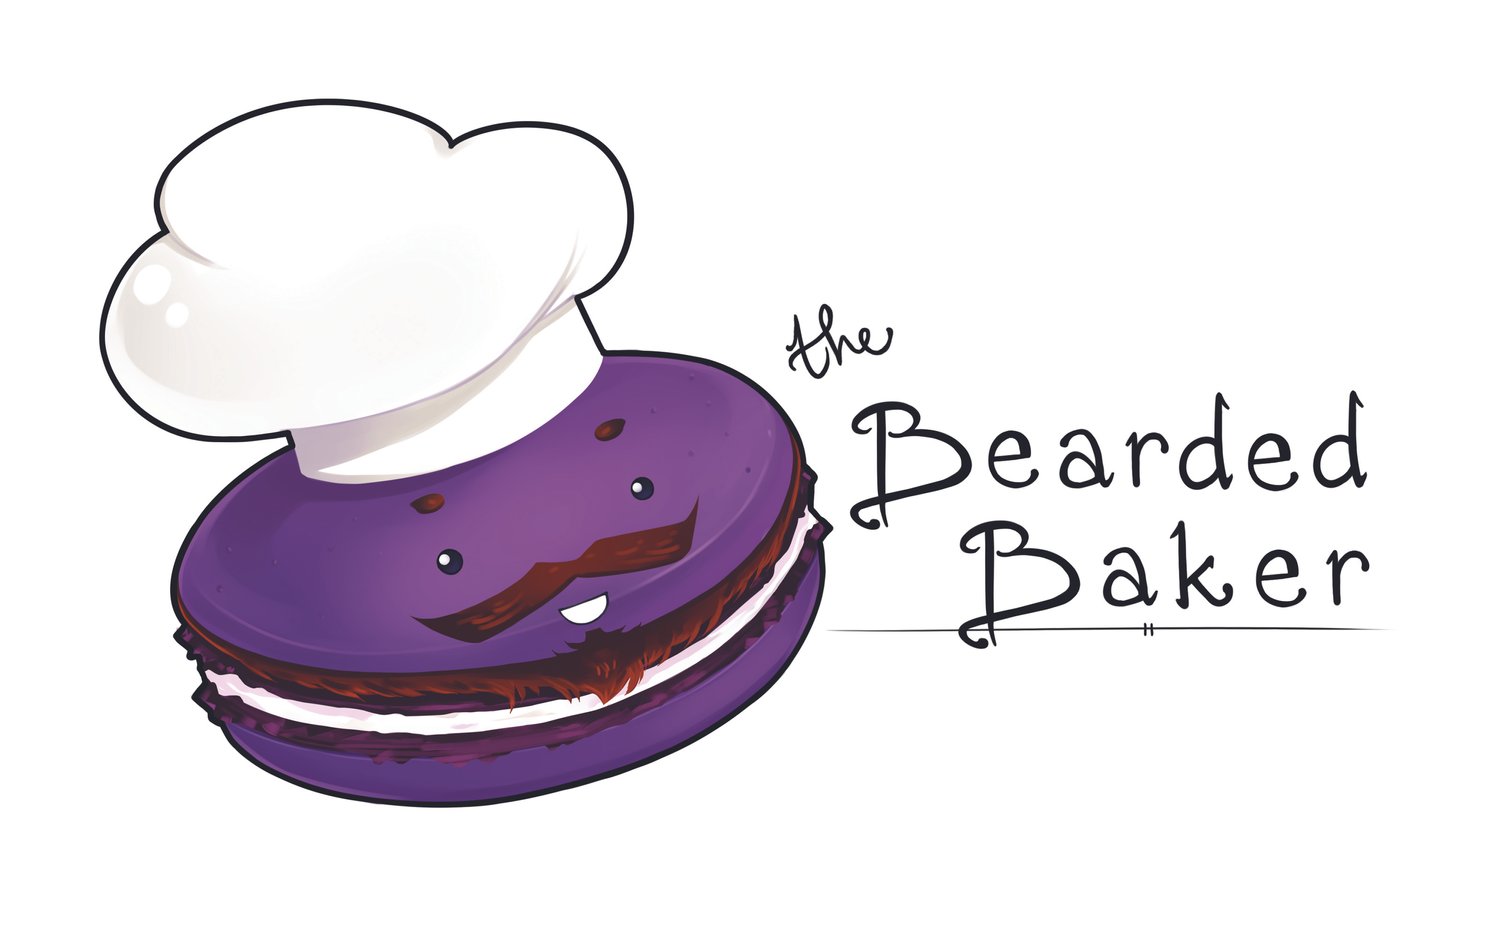 The Bearded Baker 